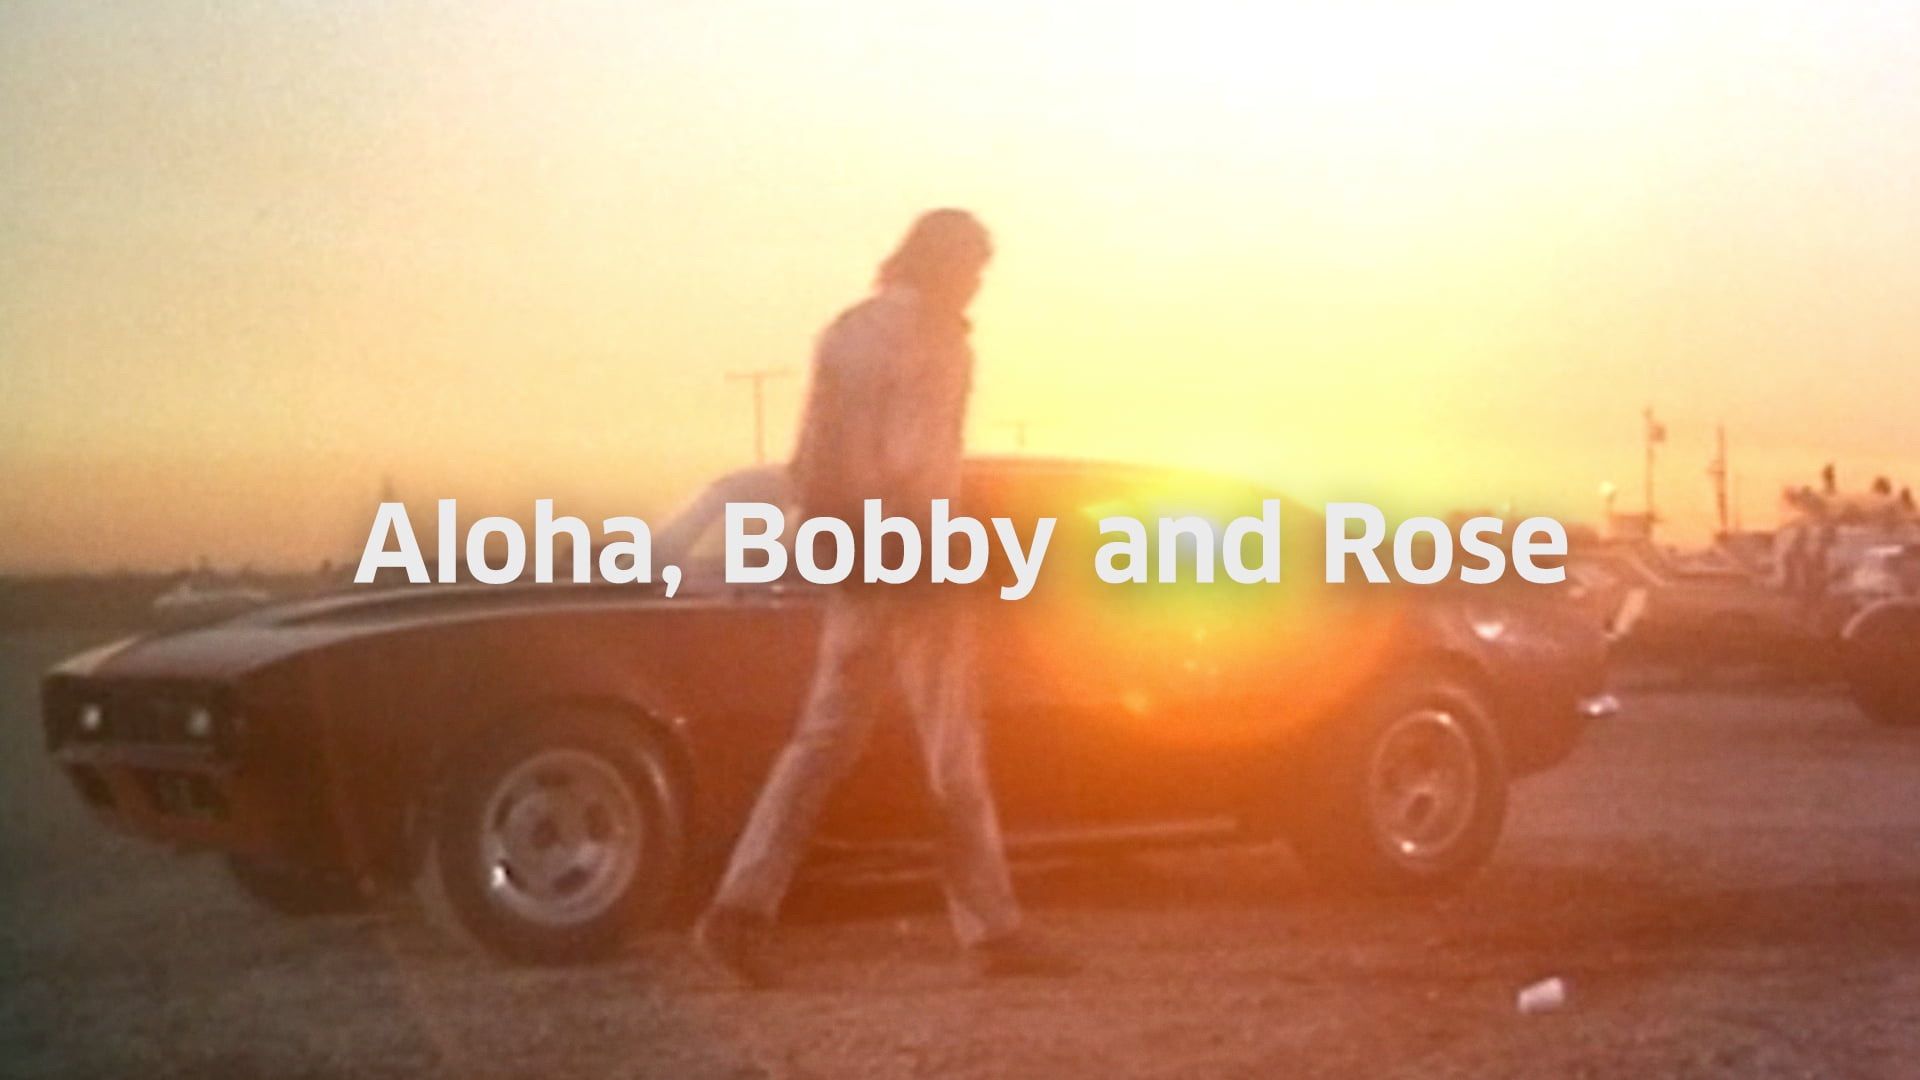 Aloha Bobby and Rose Backdrop